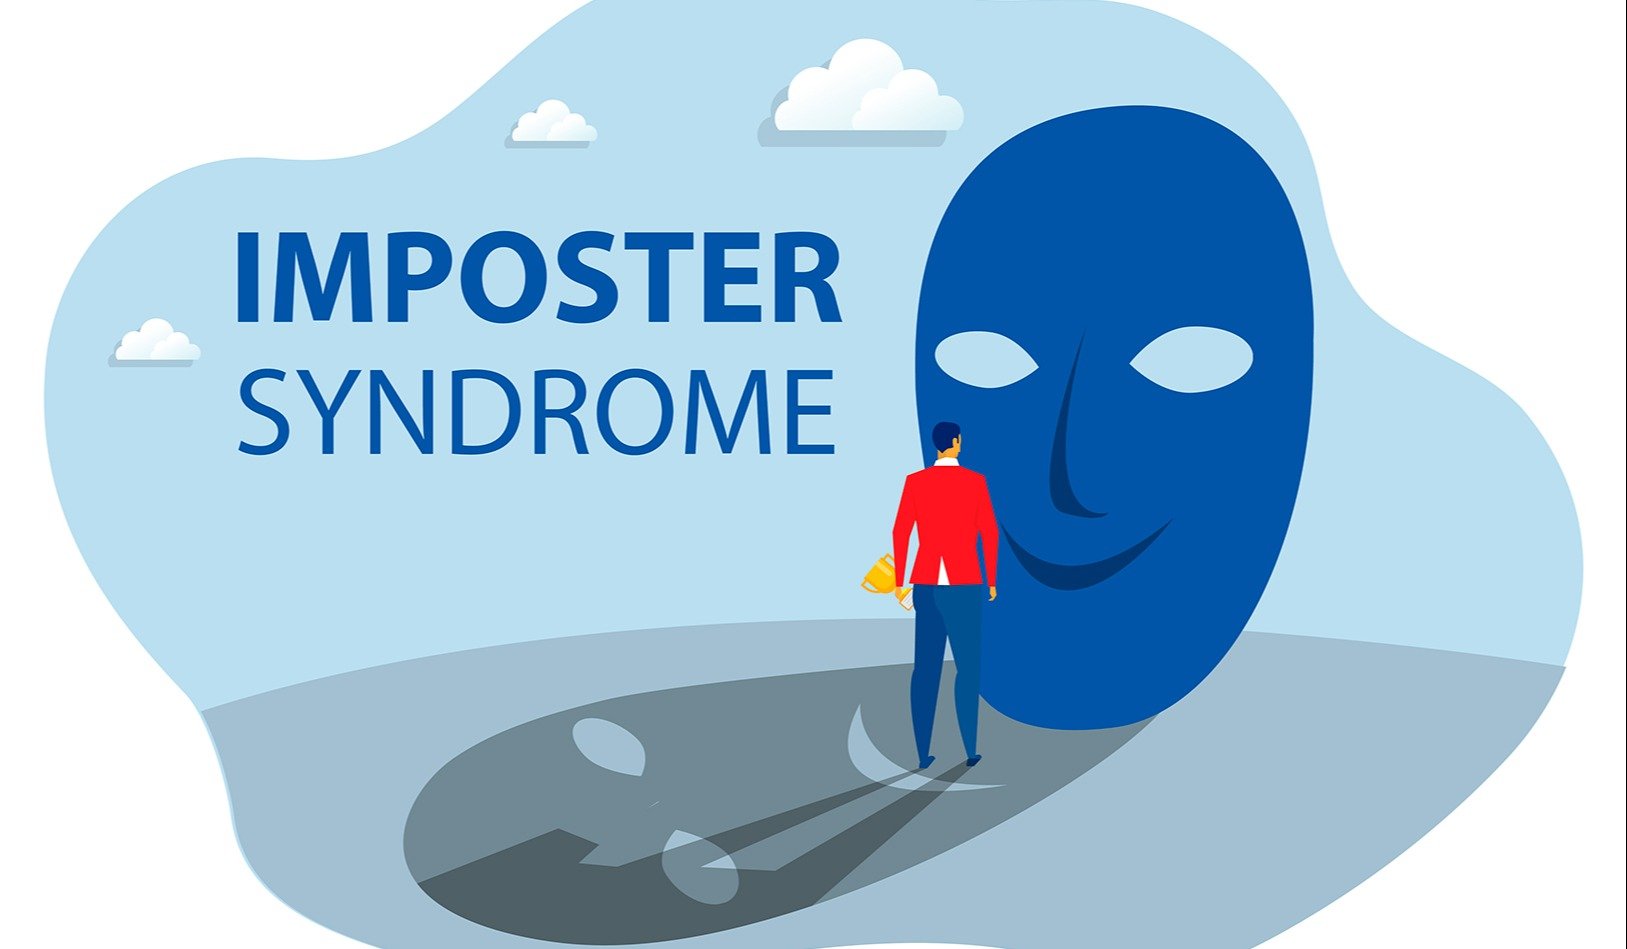 ¿Conoces el síndrome del impostor? Descubre cómo afecta a los escritores.